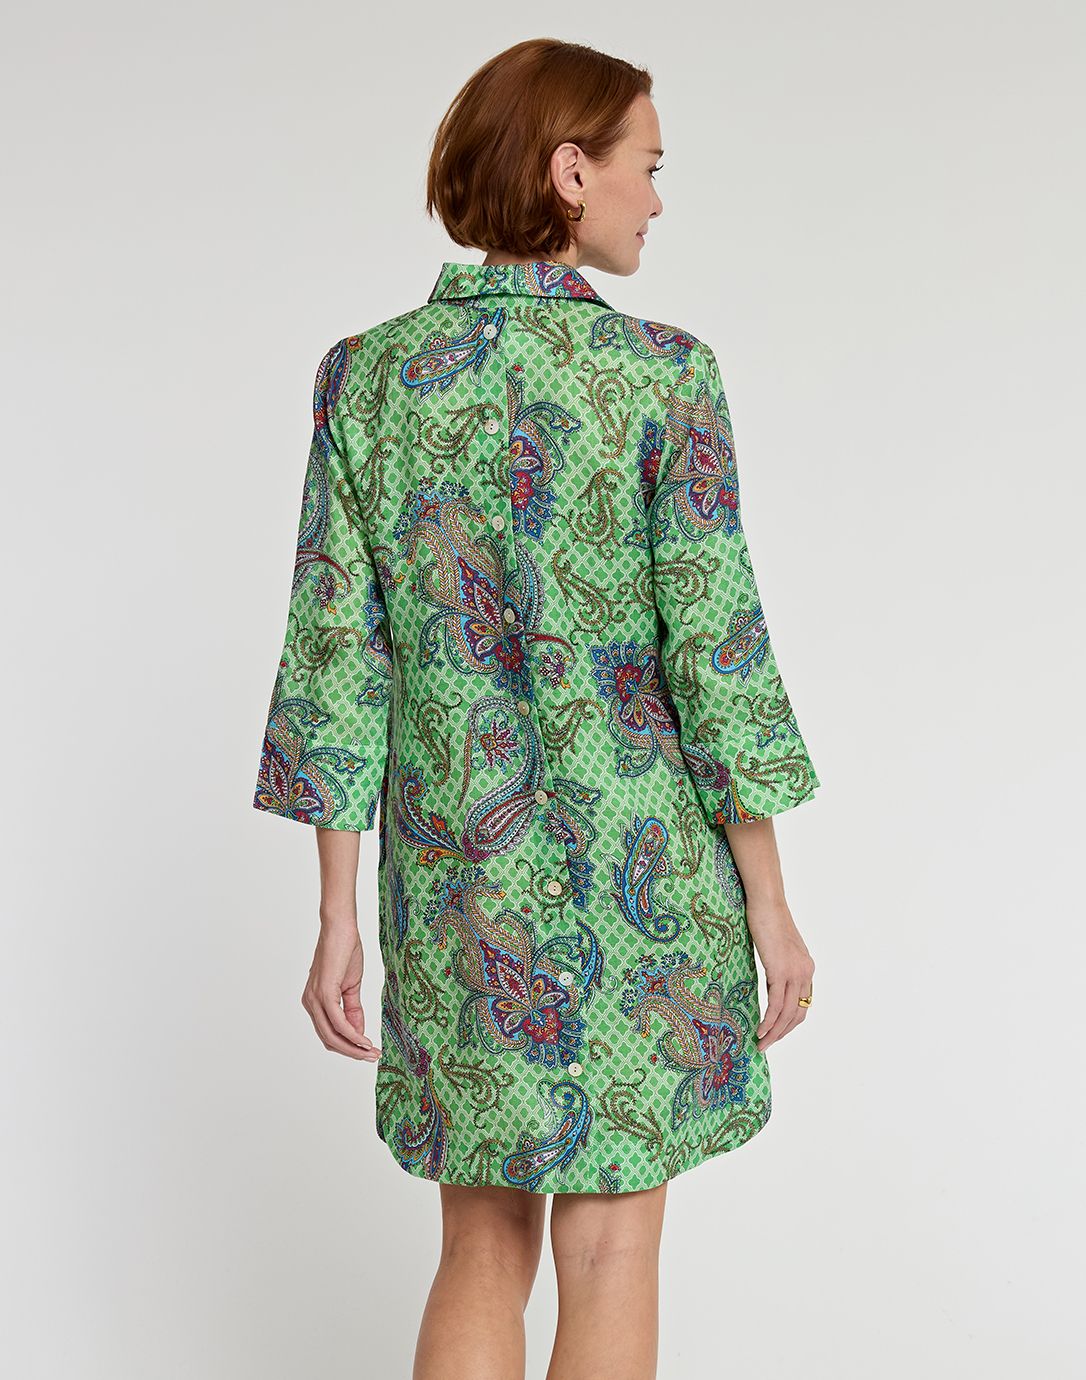 Aileen Luxe Linen Dress in Foulard Paisley Print